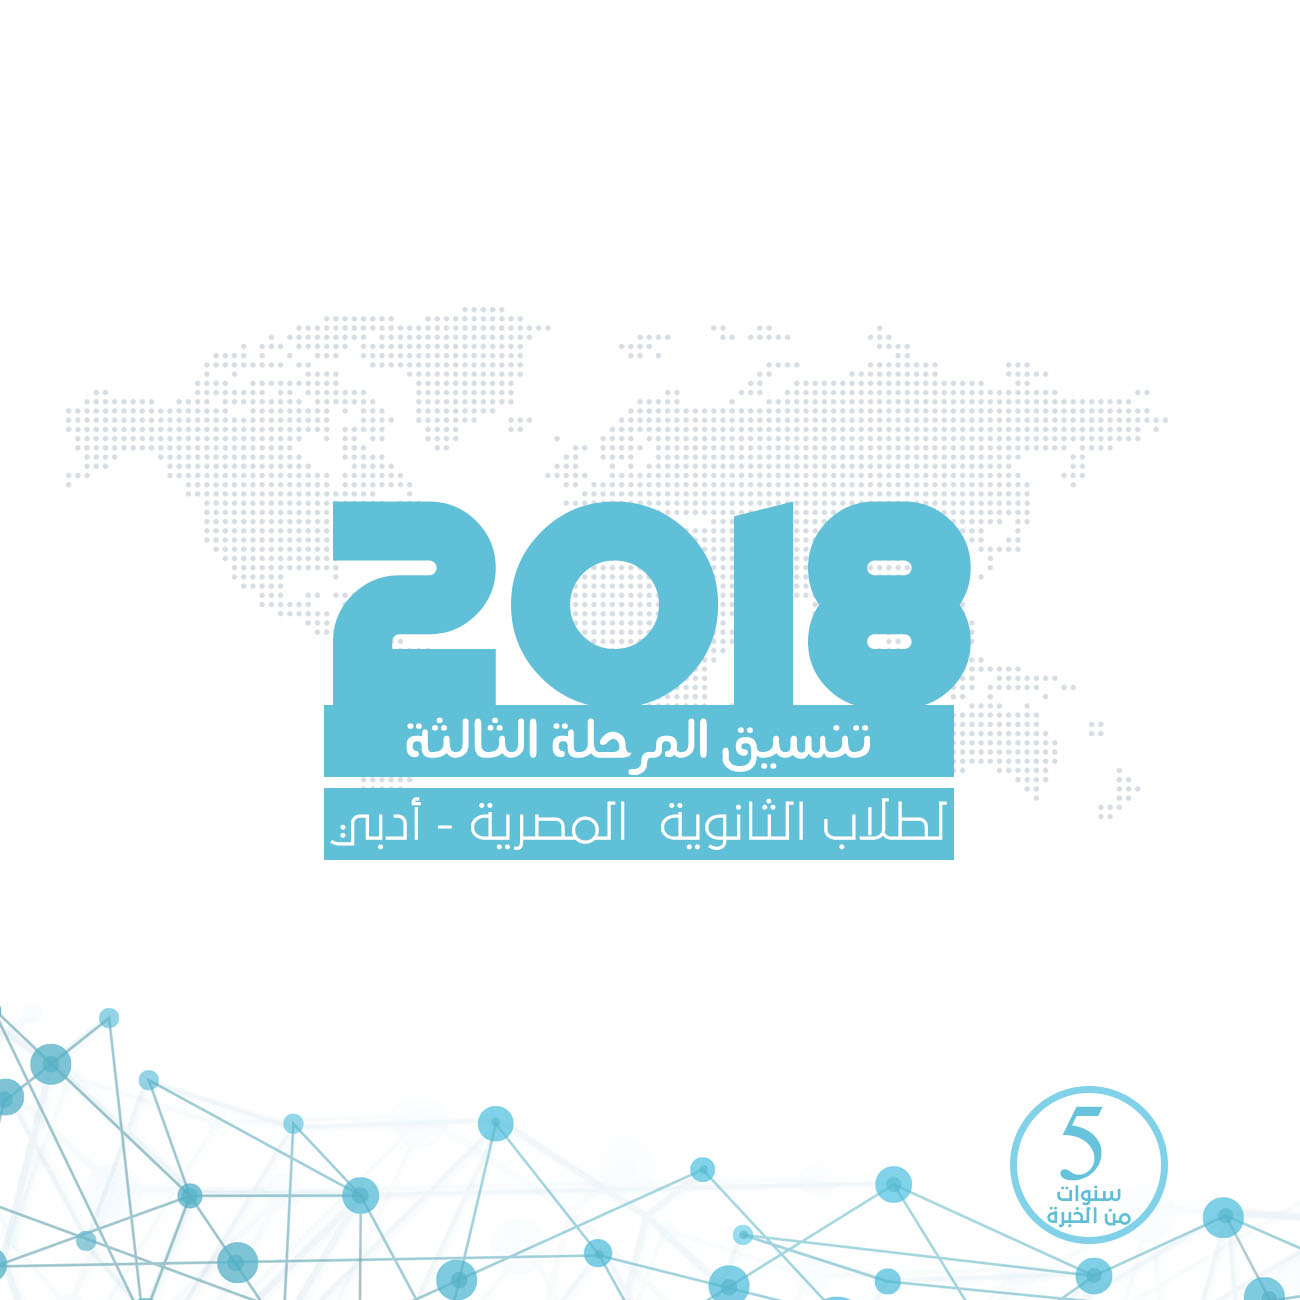 تنسيق المرحلة الثالثة للثانوية العامة المصرية (أدبي) مع النسبة المئوية -2018-